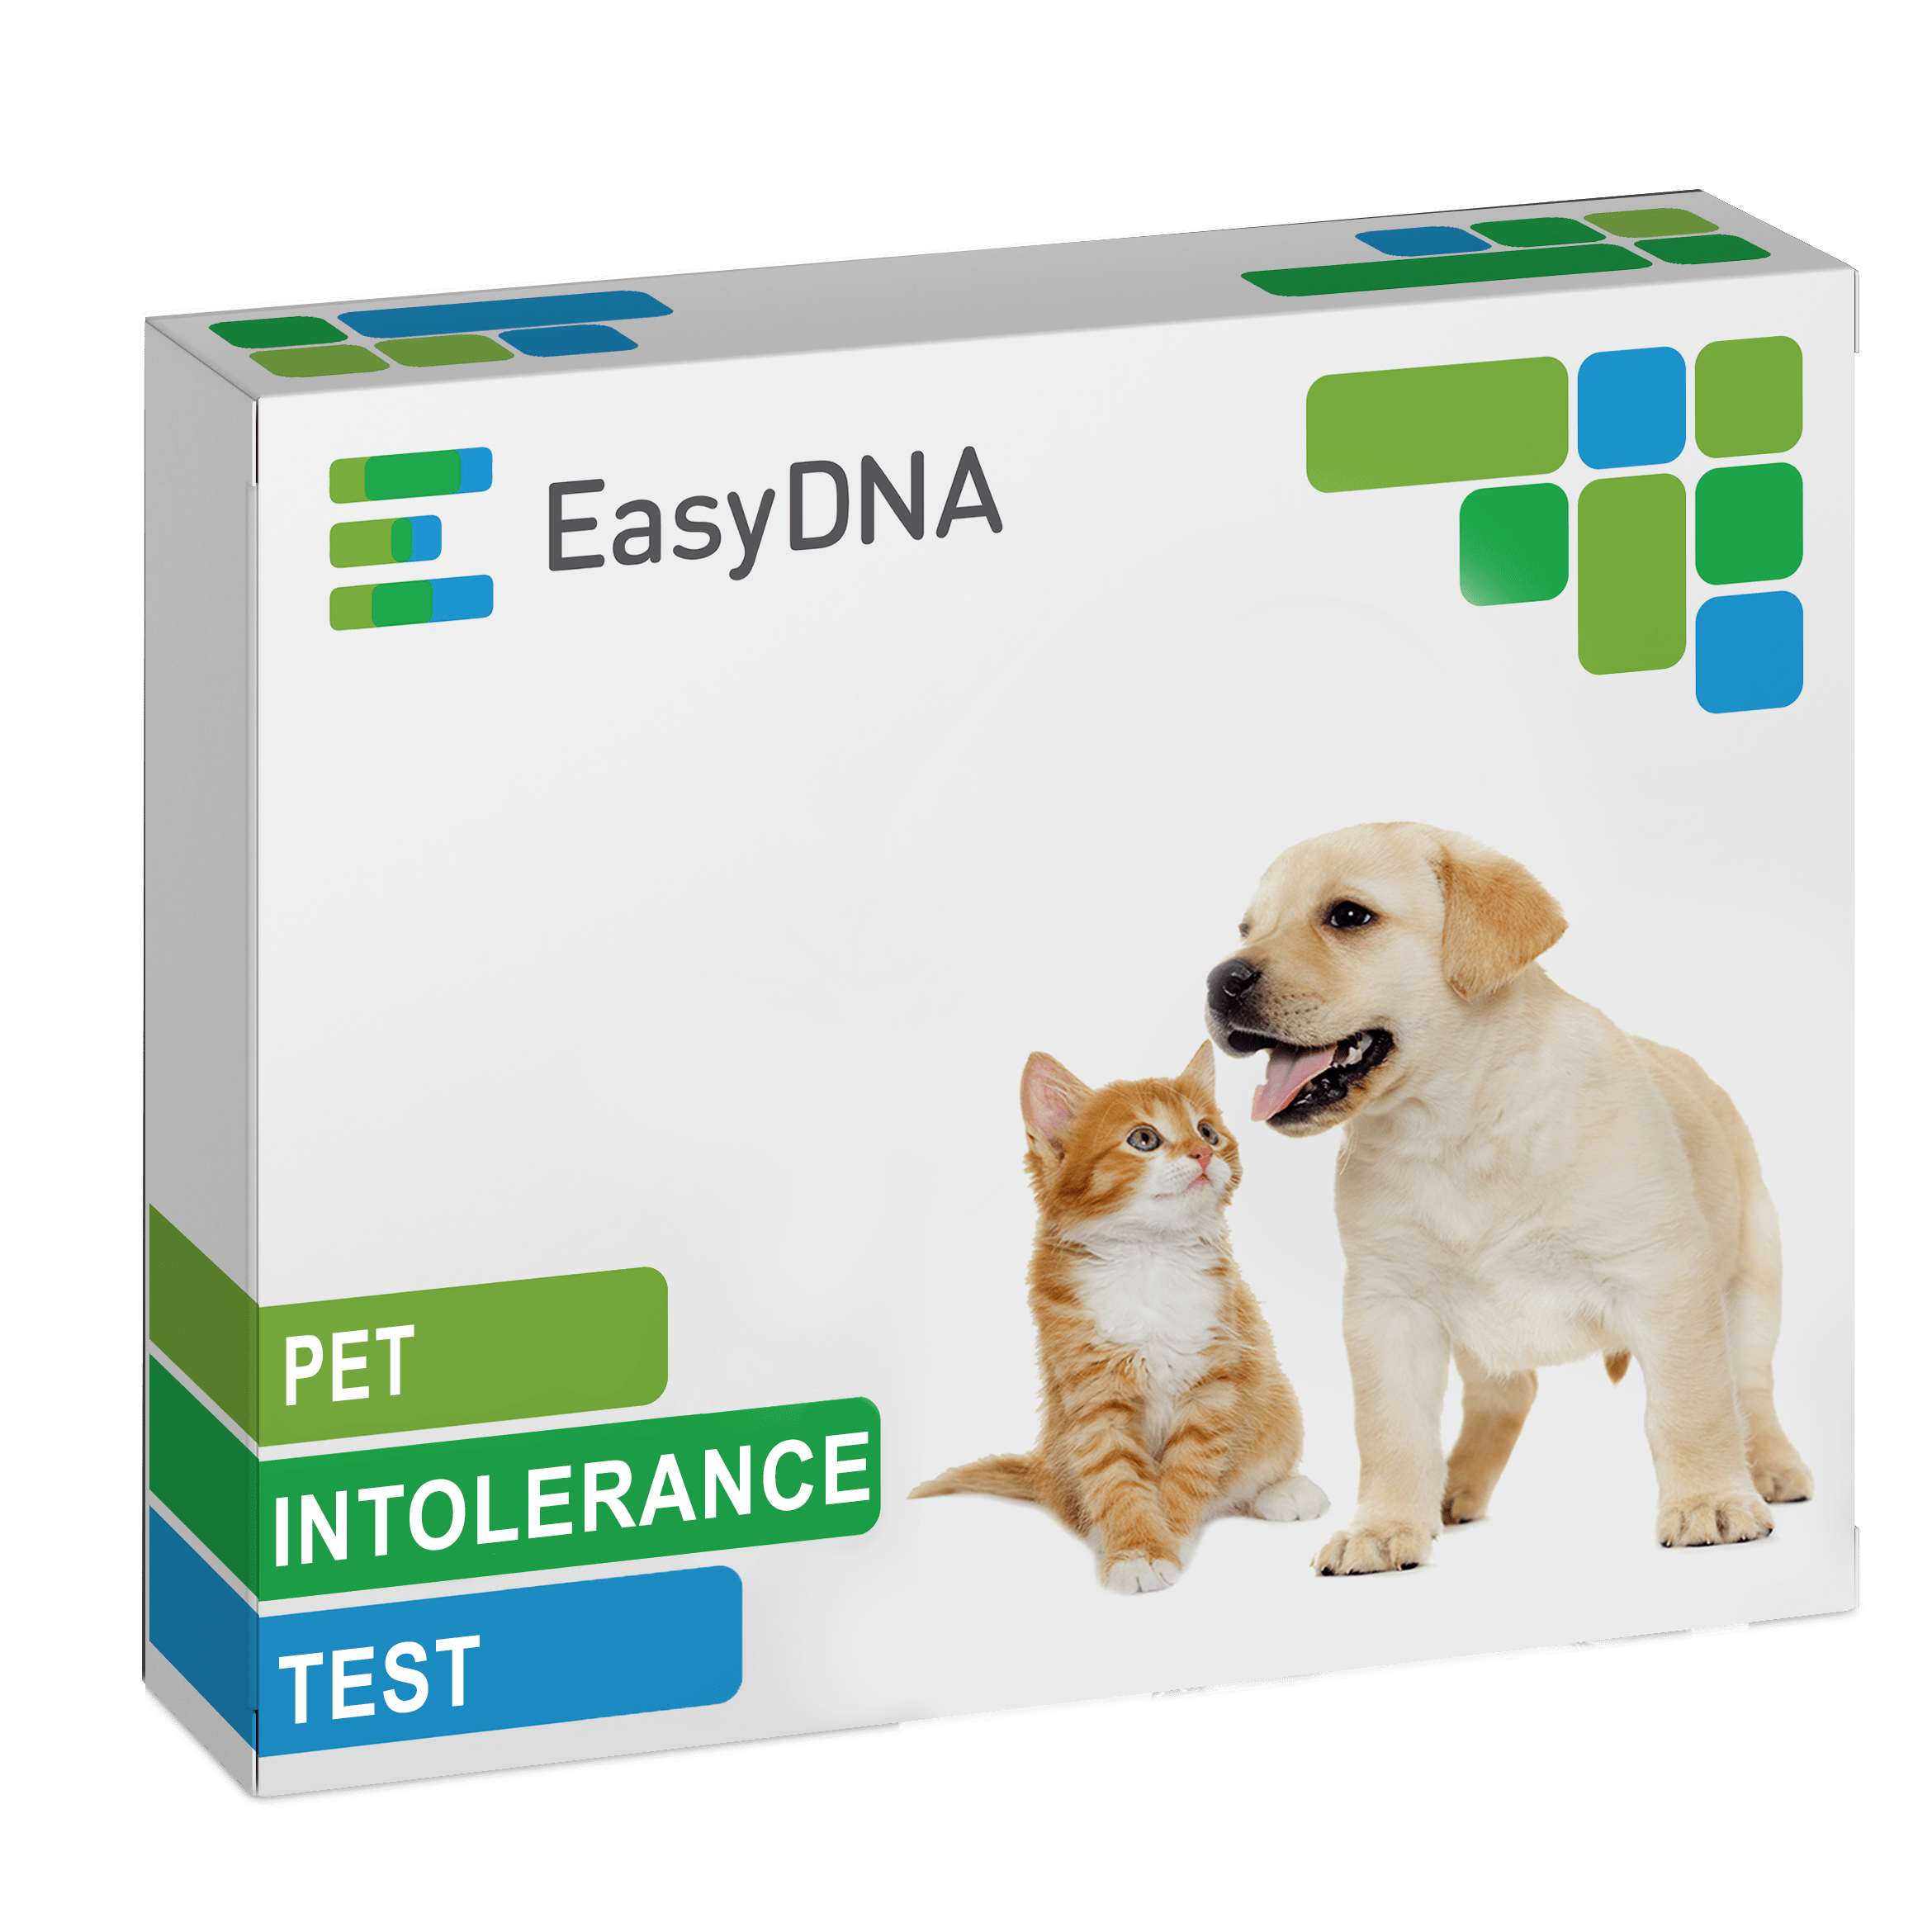 Dog Intolerance Test